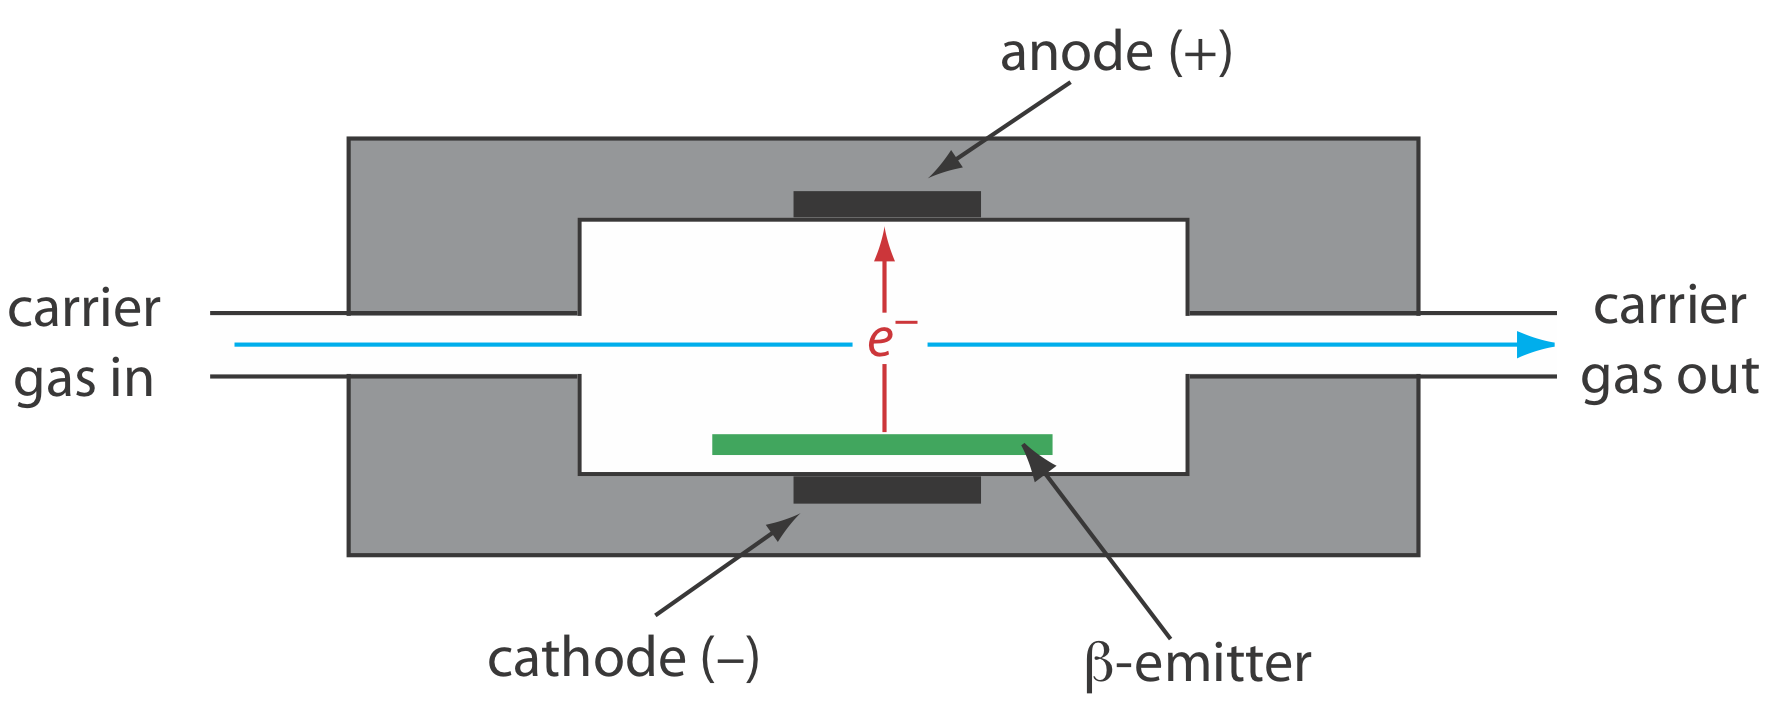 El detector de captura de electrones consiste en un flujo lineal unidireccional de gas portador dentro y fuera, durante el cual pasará por el ánodo, cátodo y emisor beta.